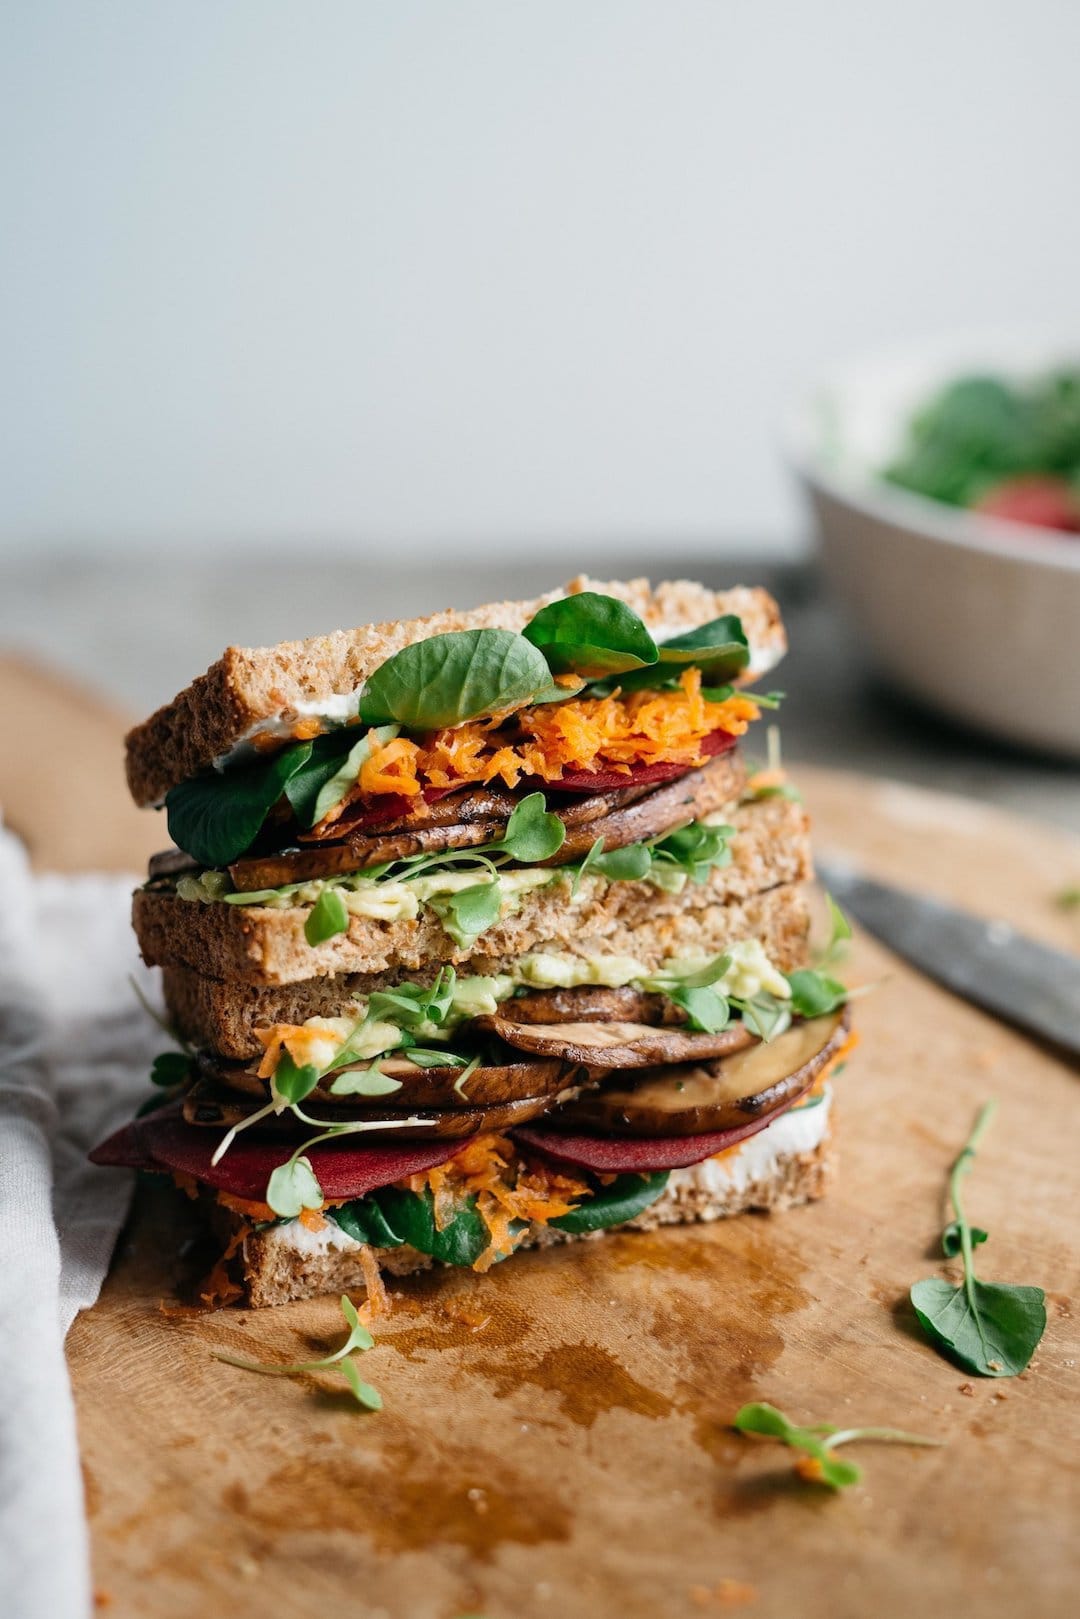 11 Yummy Plant Based Sandwiches - Avocado Club Sandwiches by Dolly & Oatmeal